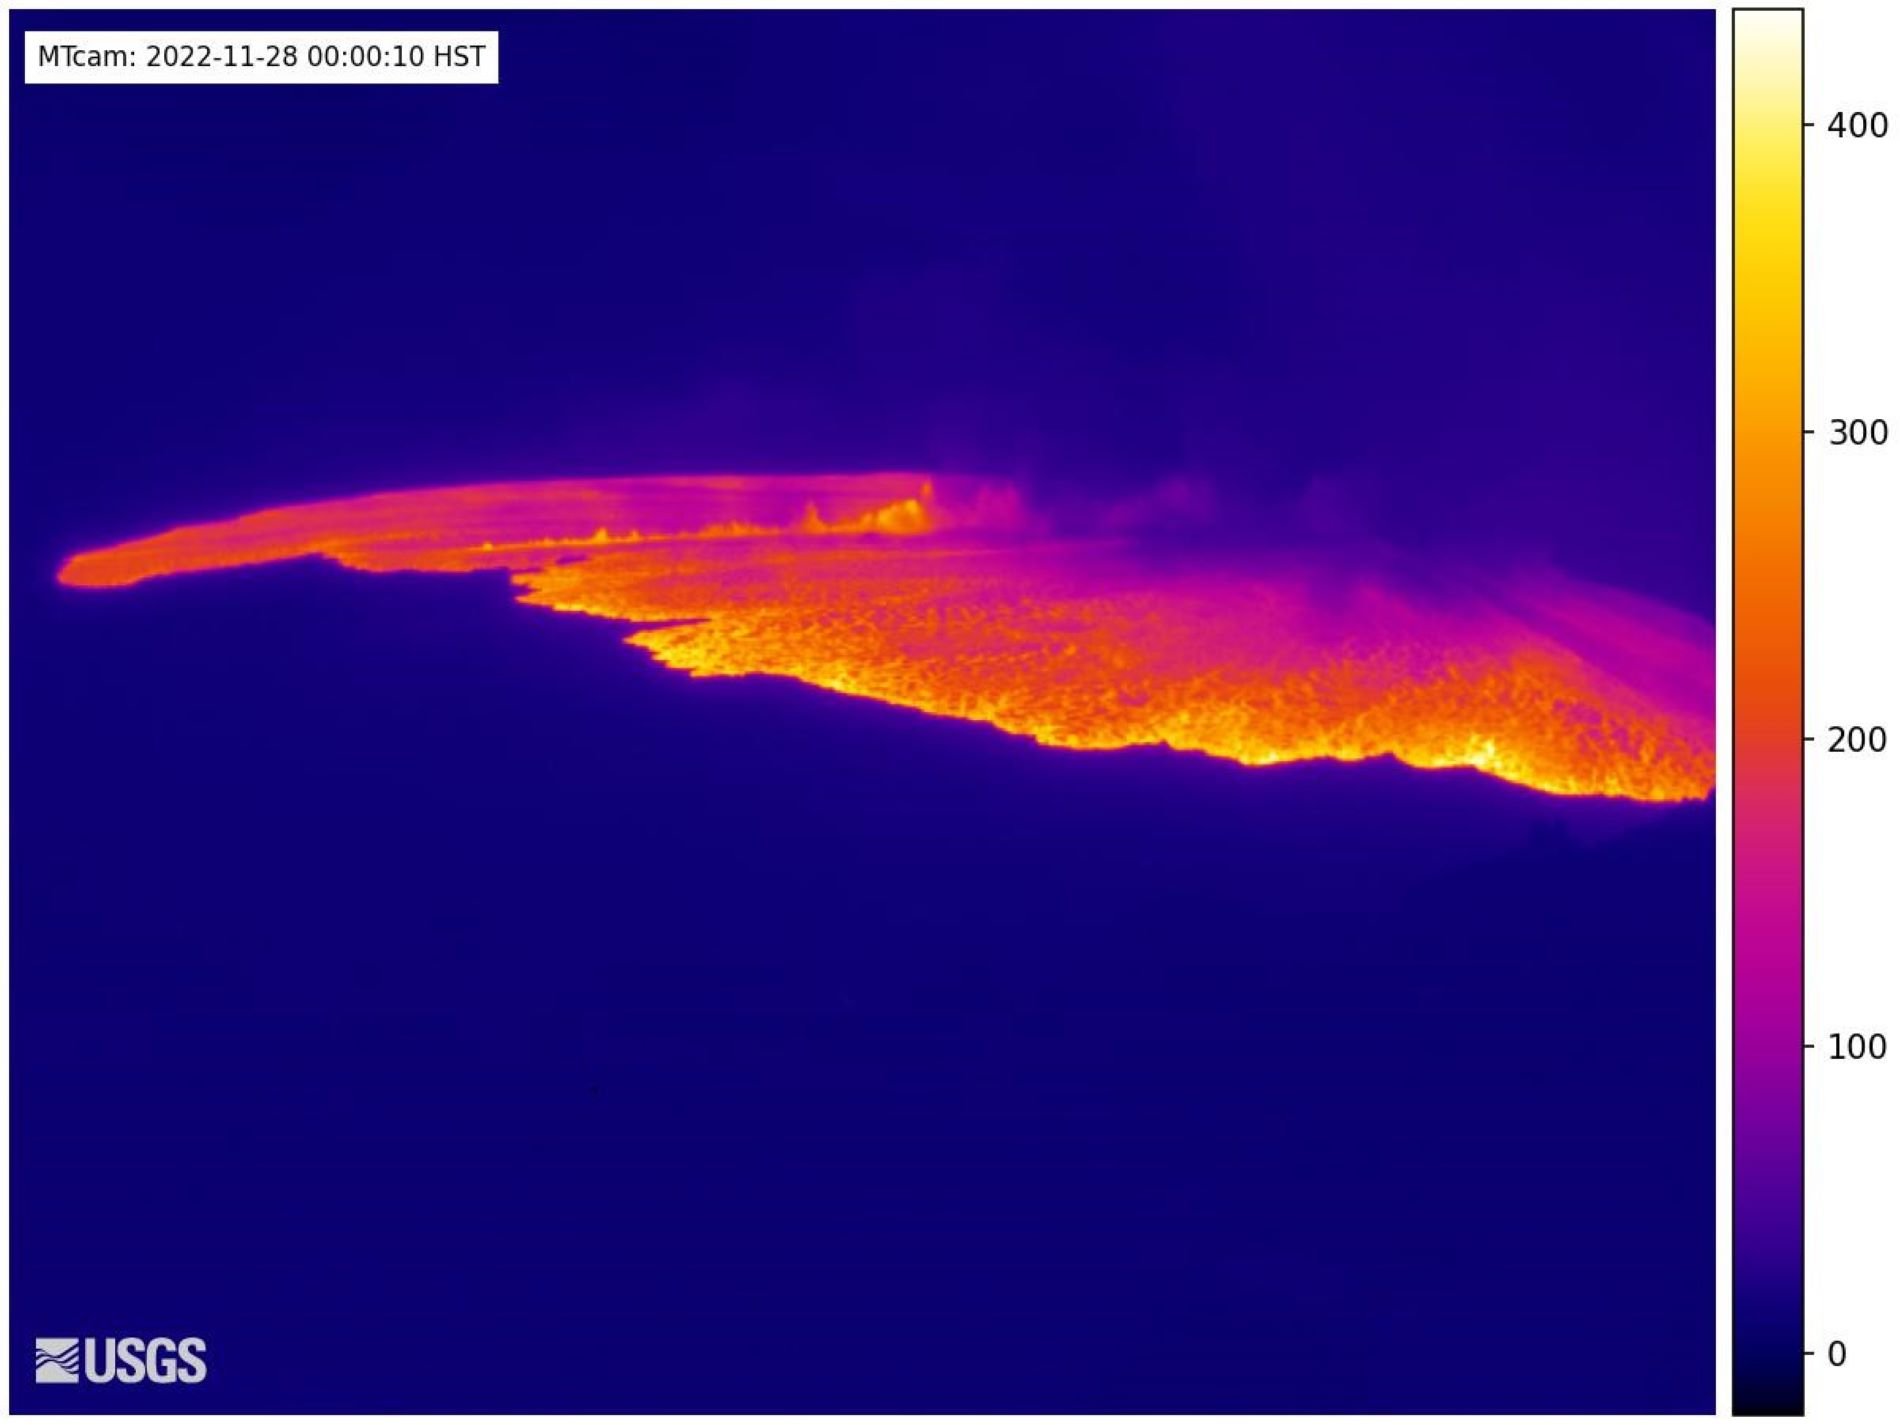 Entra en erupción el volcán Mauna Loa de Hawái, el más grande del mundo todavía activo